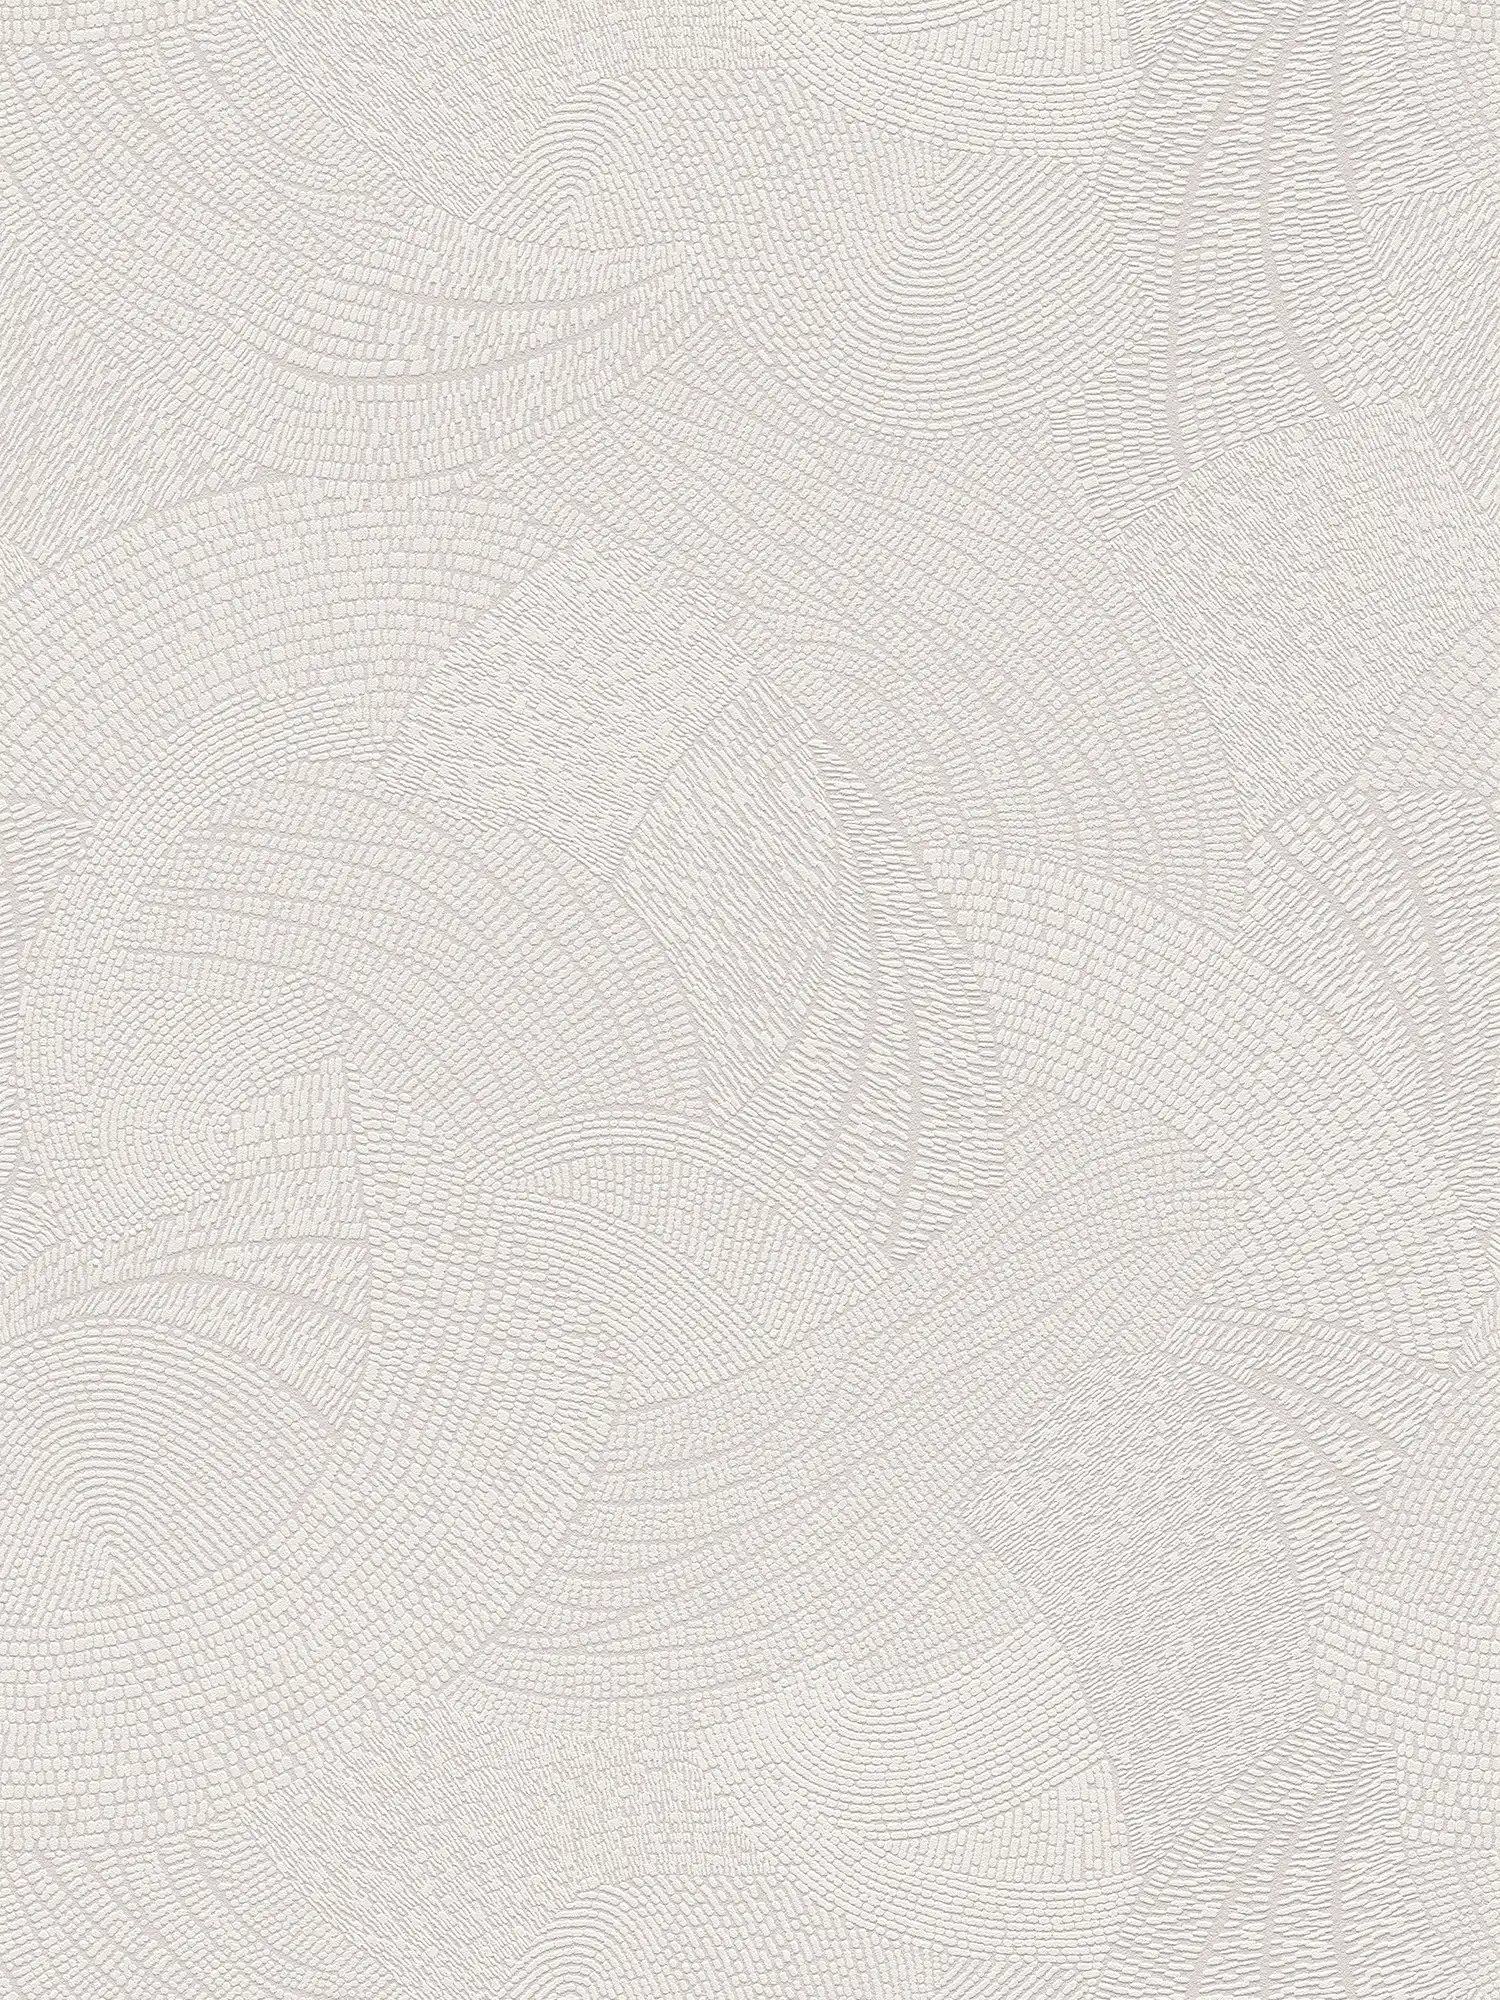         Grafische Wellenmuster Vliestapete – Grau, Weiß
    